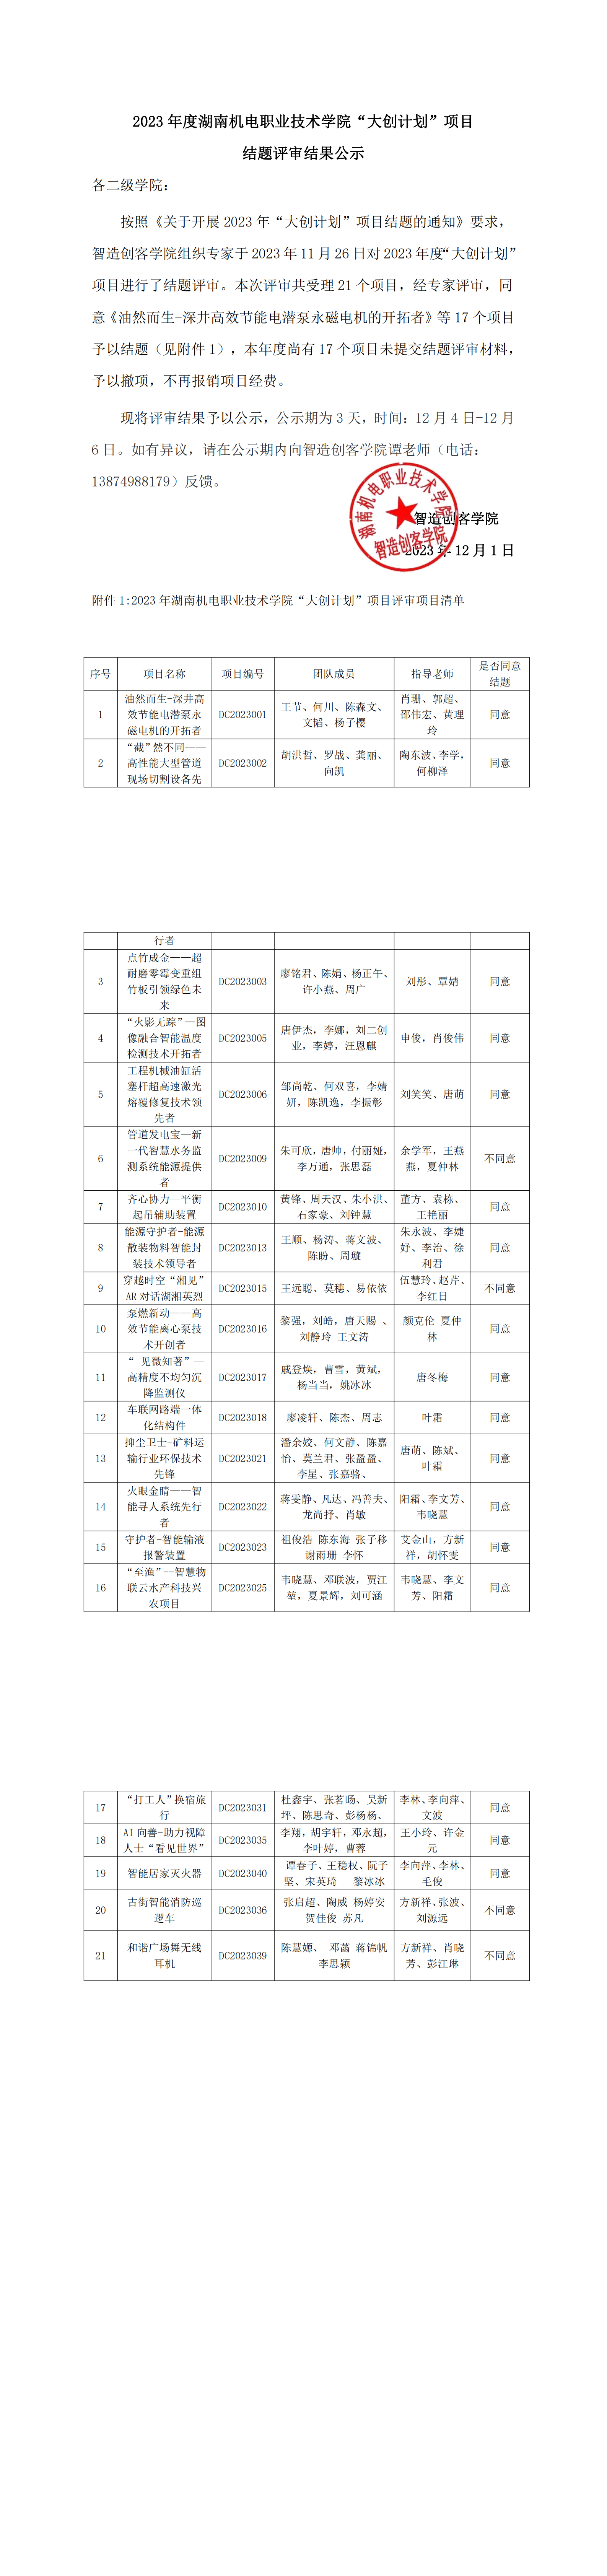 2023年度suncity group太阳新城“大创计划”项目结题评审结果公示_00.png